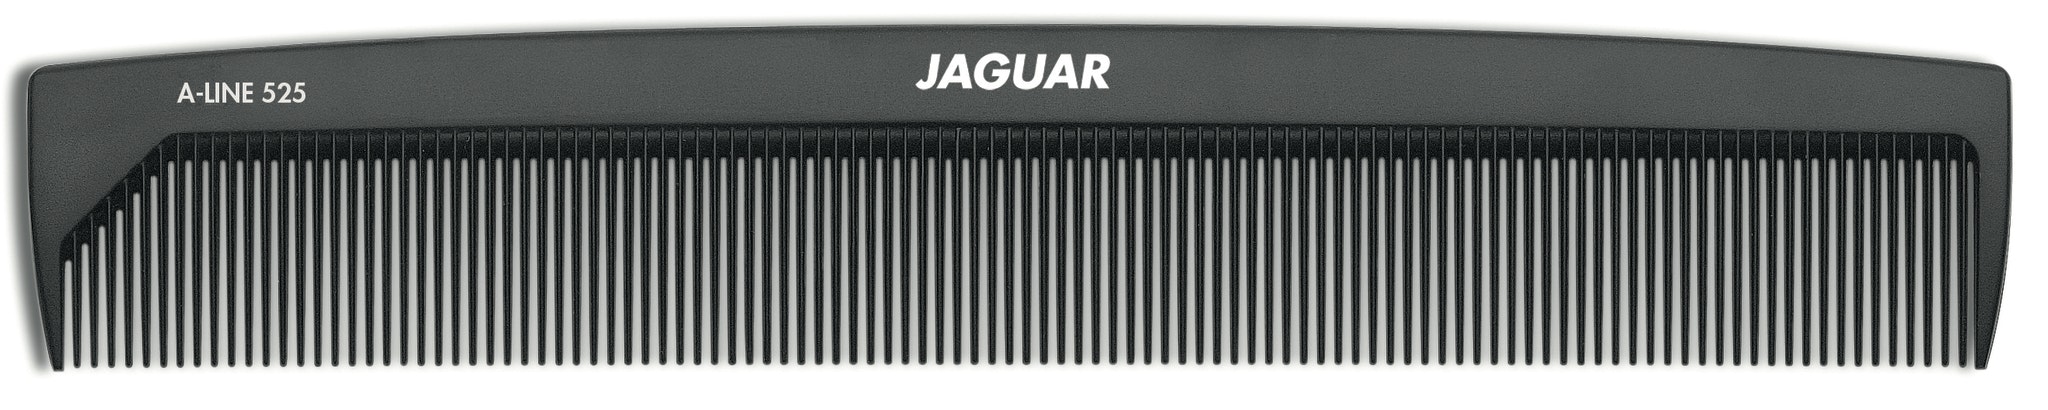 svart klippkam från jaguar